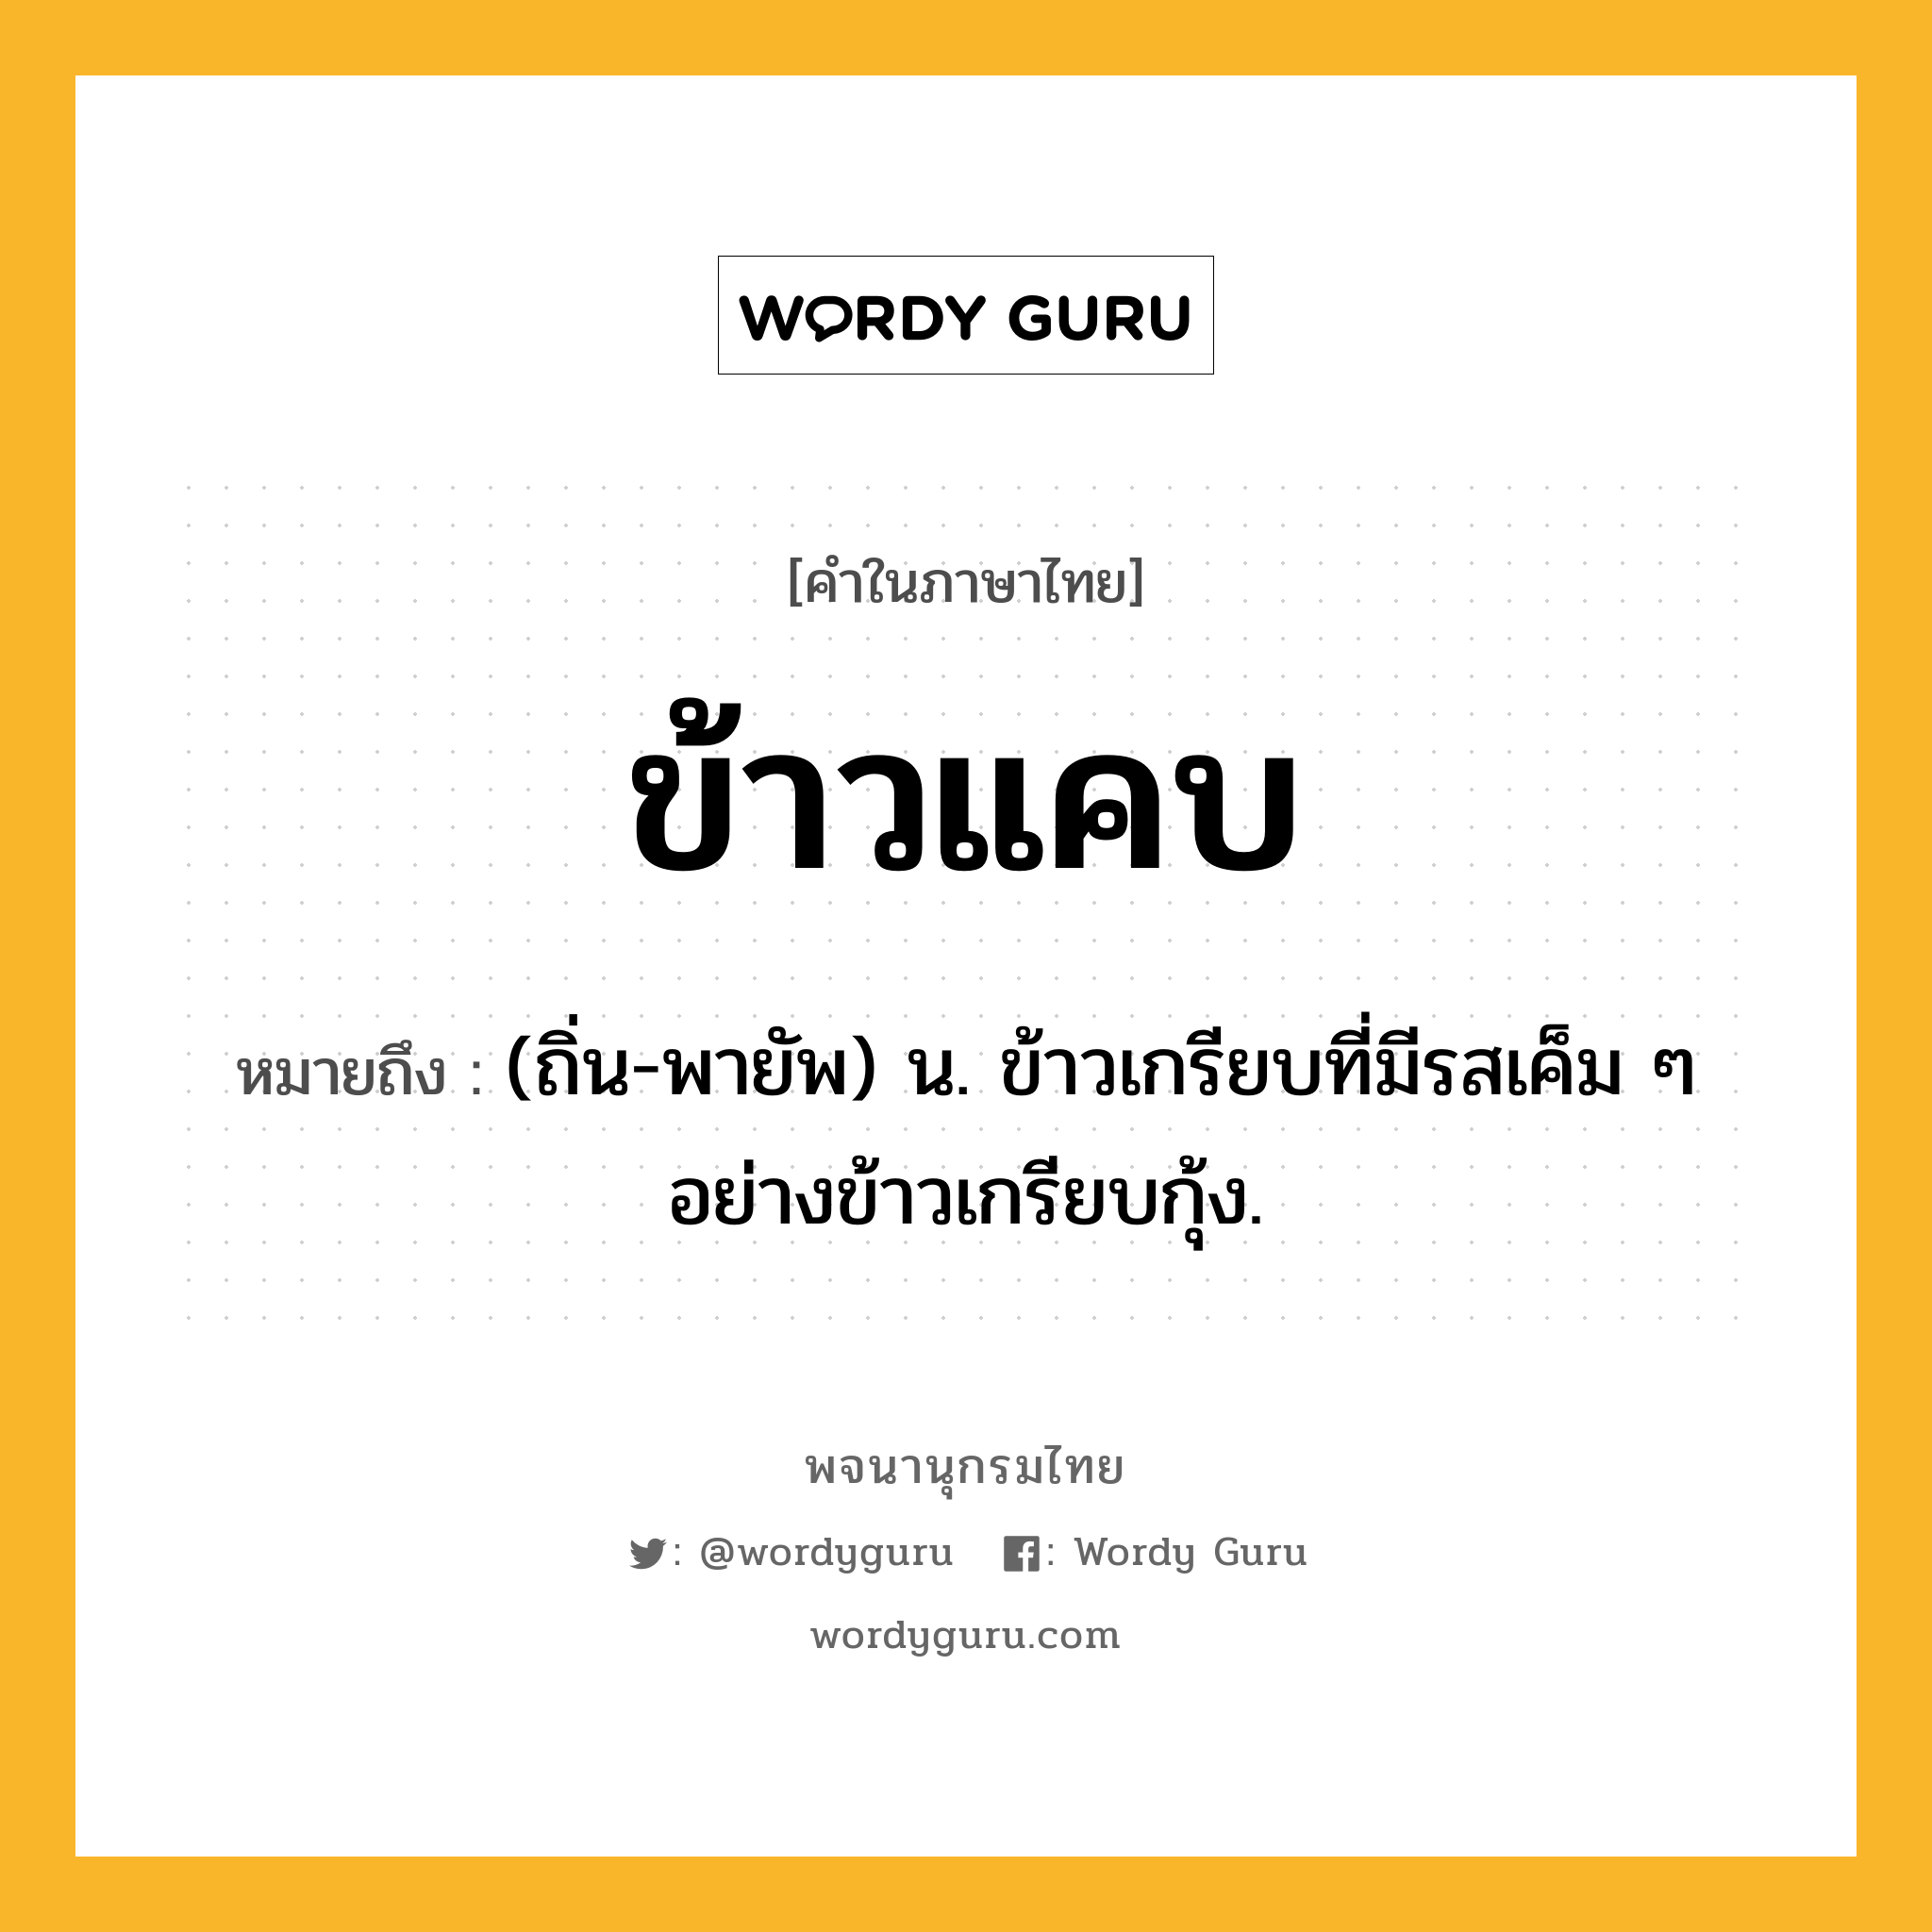 ข้าวแคบ ความหมาย หมายถึงอะไร?, คำในภาษาไทย ข้าวแคบ หมายถึง (ถิ่น-พายัพ) น. ข้าวเกรียบที่มีรสเค็ม ๆ อย่างข้าวเกรียบกุ้ง.